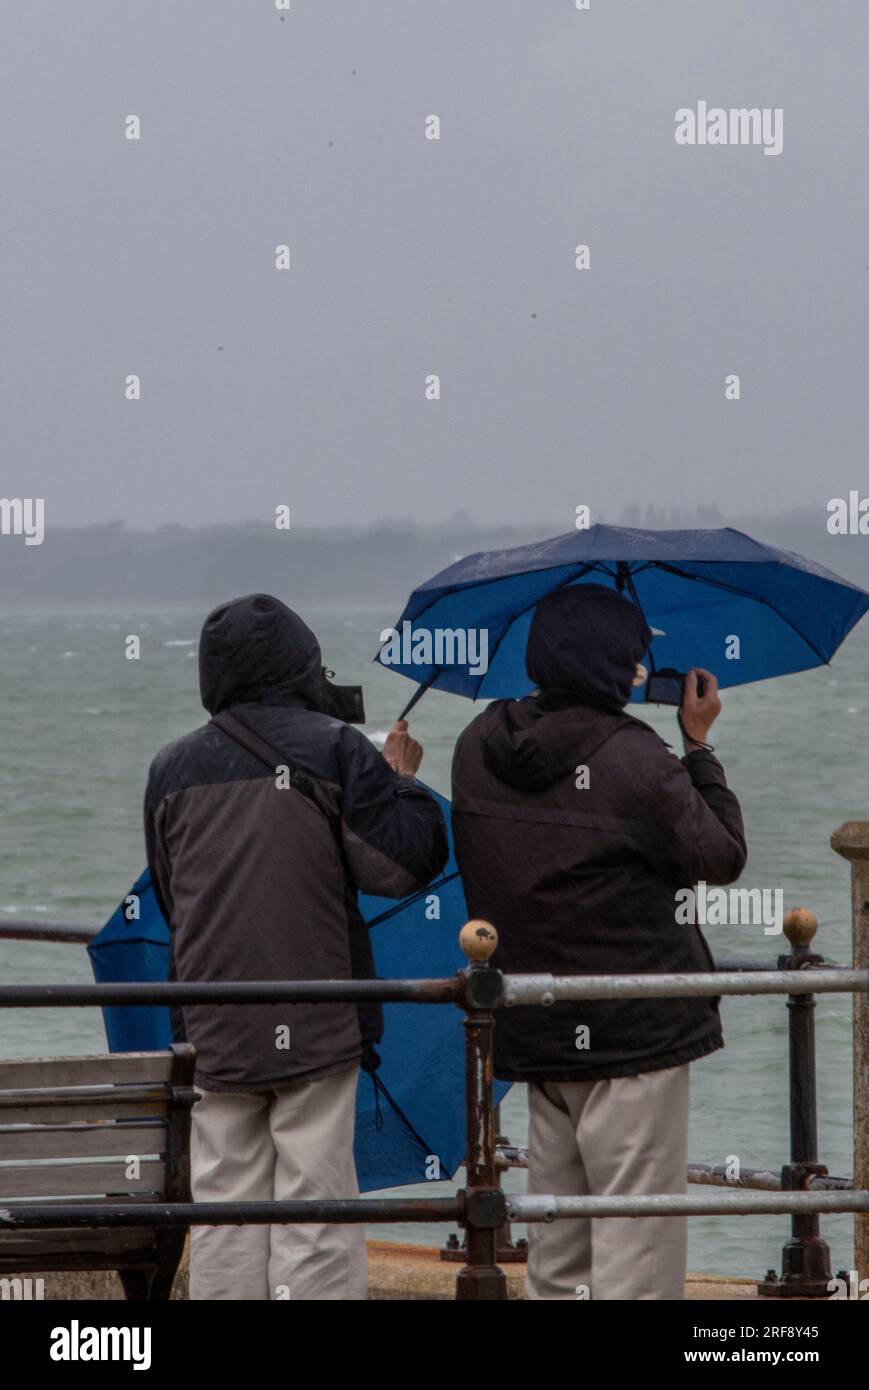 famille debout sous la pluie avec des parapluies au bord de la mer. famille en vacances sous la pluie battante utilisant des parapluies pour se protéger et rester au sec. Banque D'Images